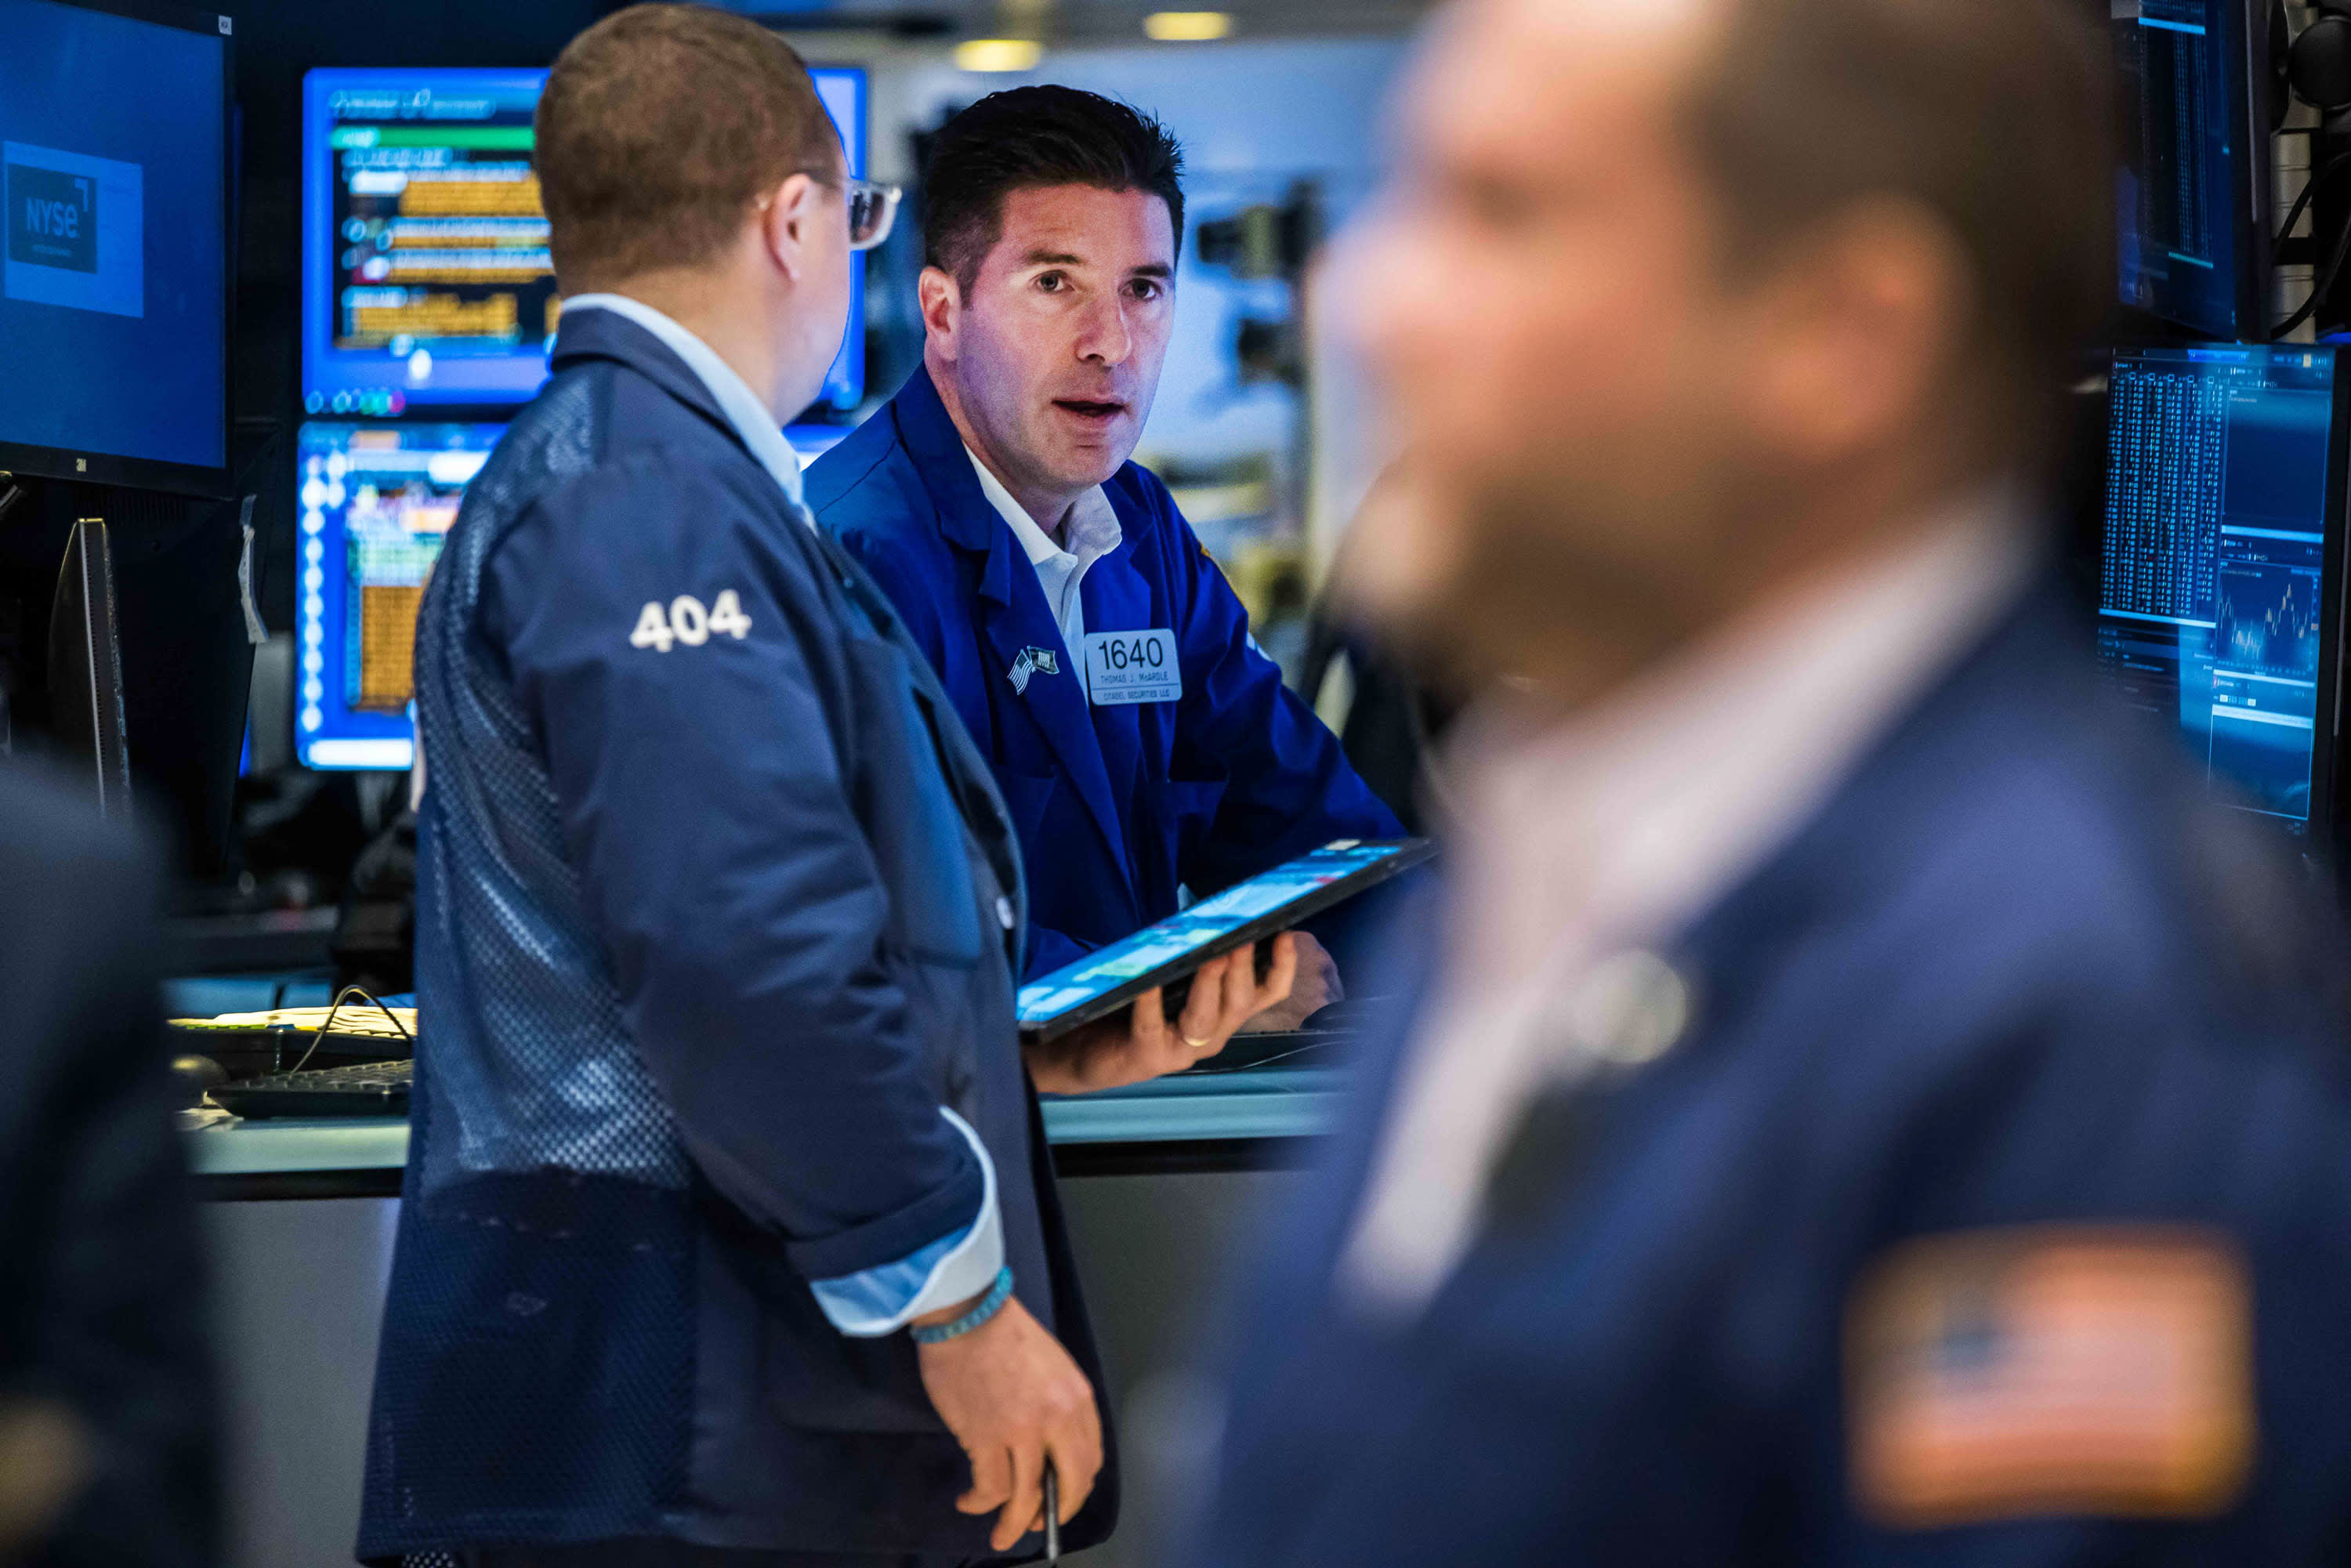 Mercato azionario oggi: aggiornamenti in tempo reale